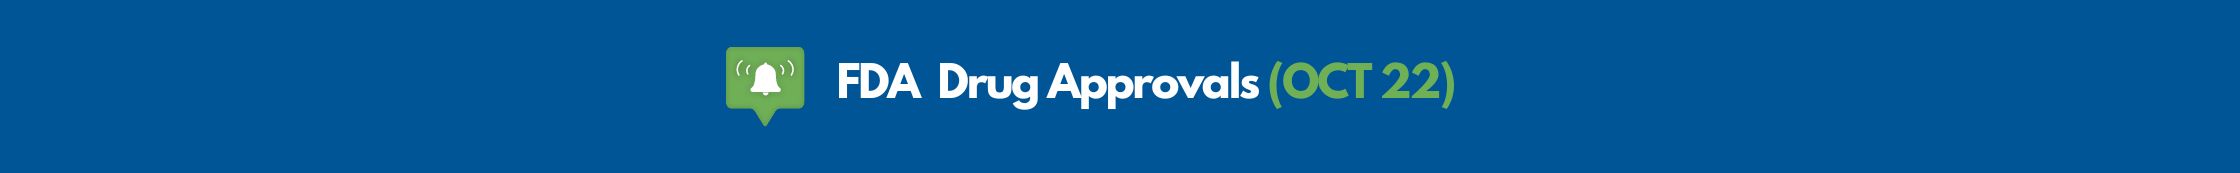 FDA Drug Approvals (Oct 22) Banner Image